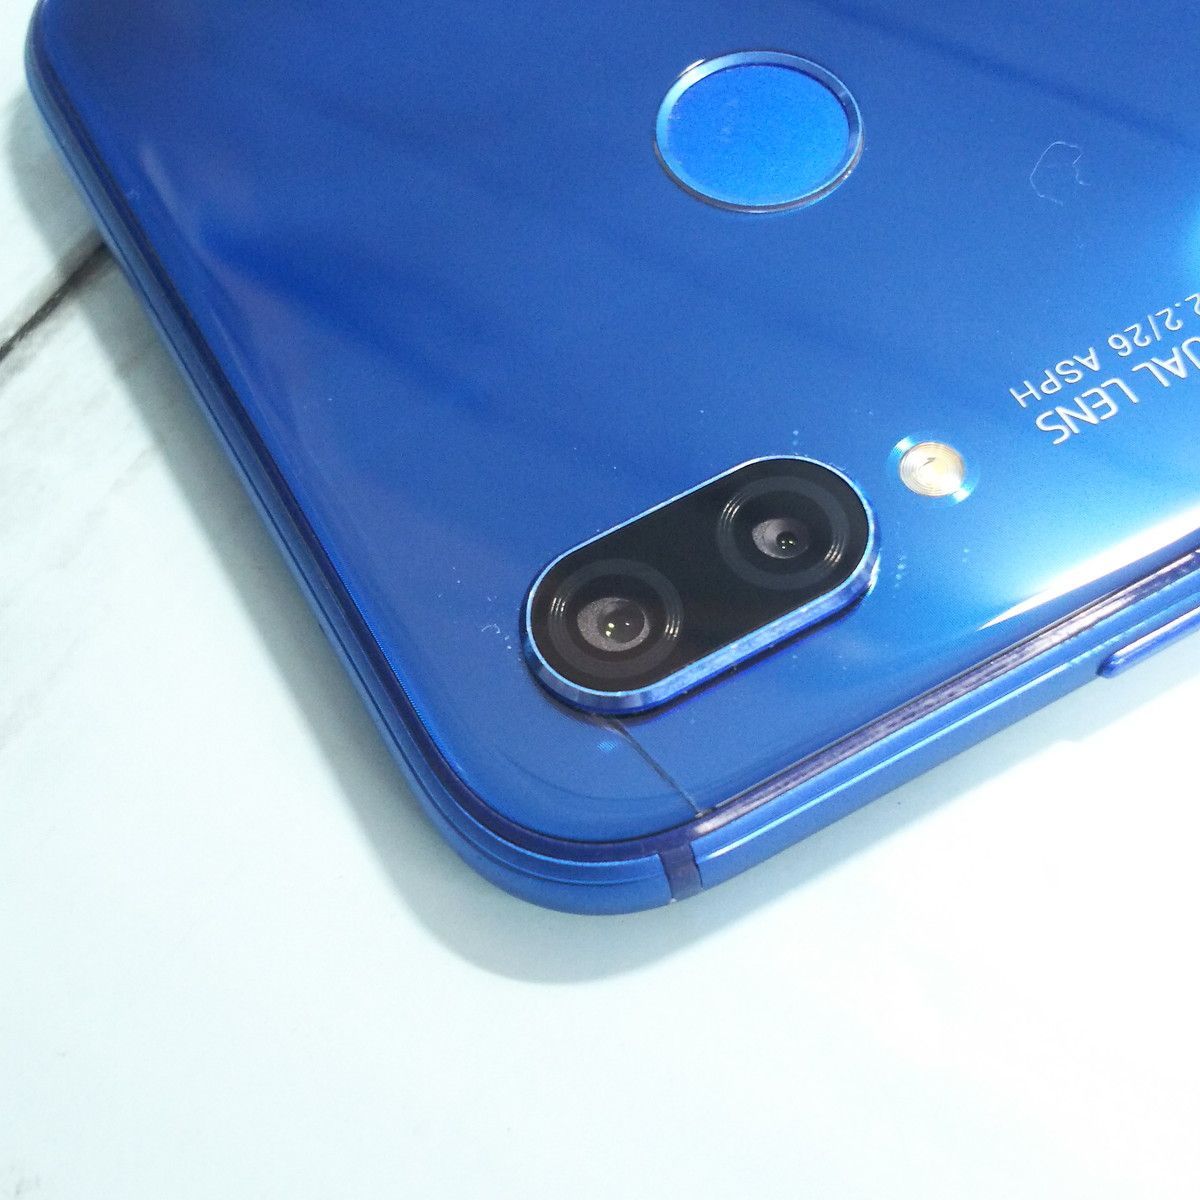 Huawei au P20 lite HWV32 Klein Blue 本体 白ロム SIMロック解除済み ...